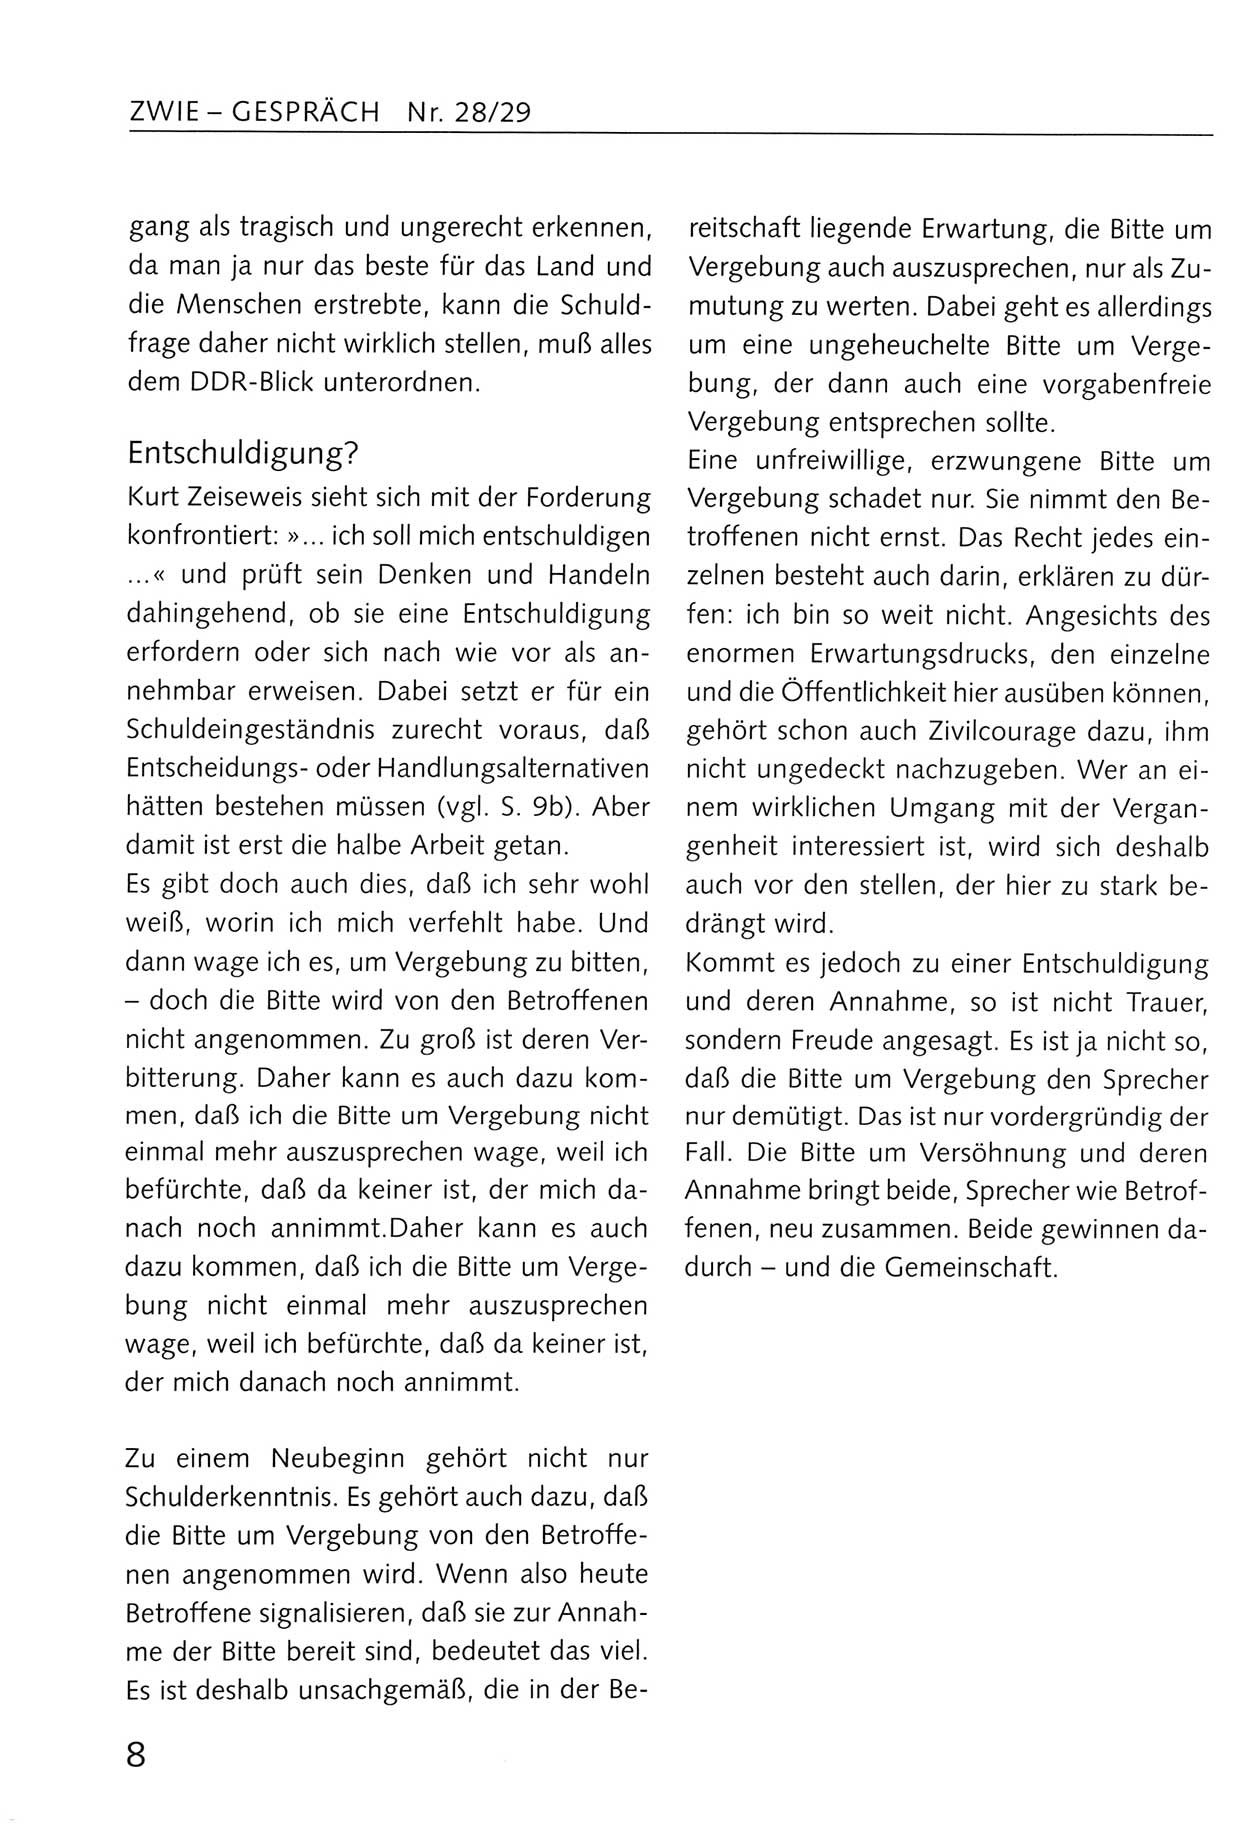 Zwie-Gespräch, Beiträge zum Umgang mit der Staatssicherheits-Vergangenheit [Deutsche Demokratische Republik (DDR)], Ausgabe Nr. 28/29, Berlin 1995, Seite 8 (Zwie-Gespr. Ausg. 28/29 1995, S. 8)